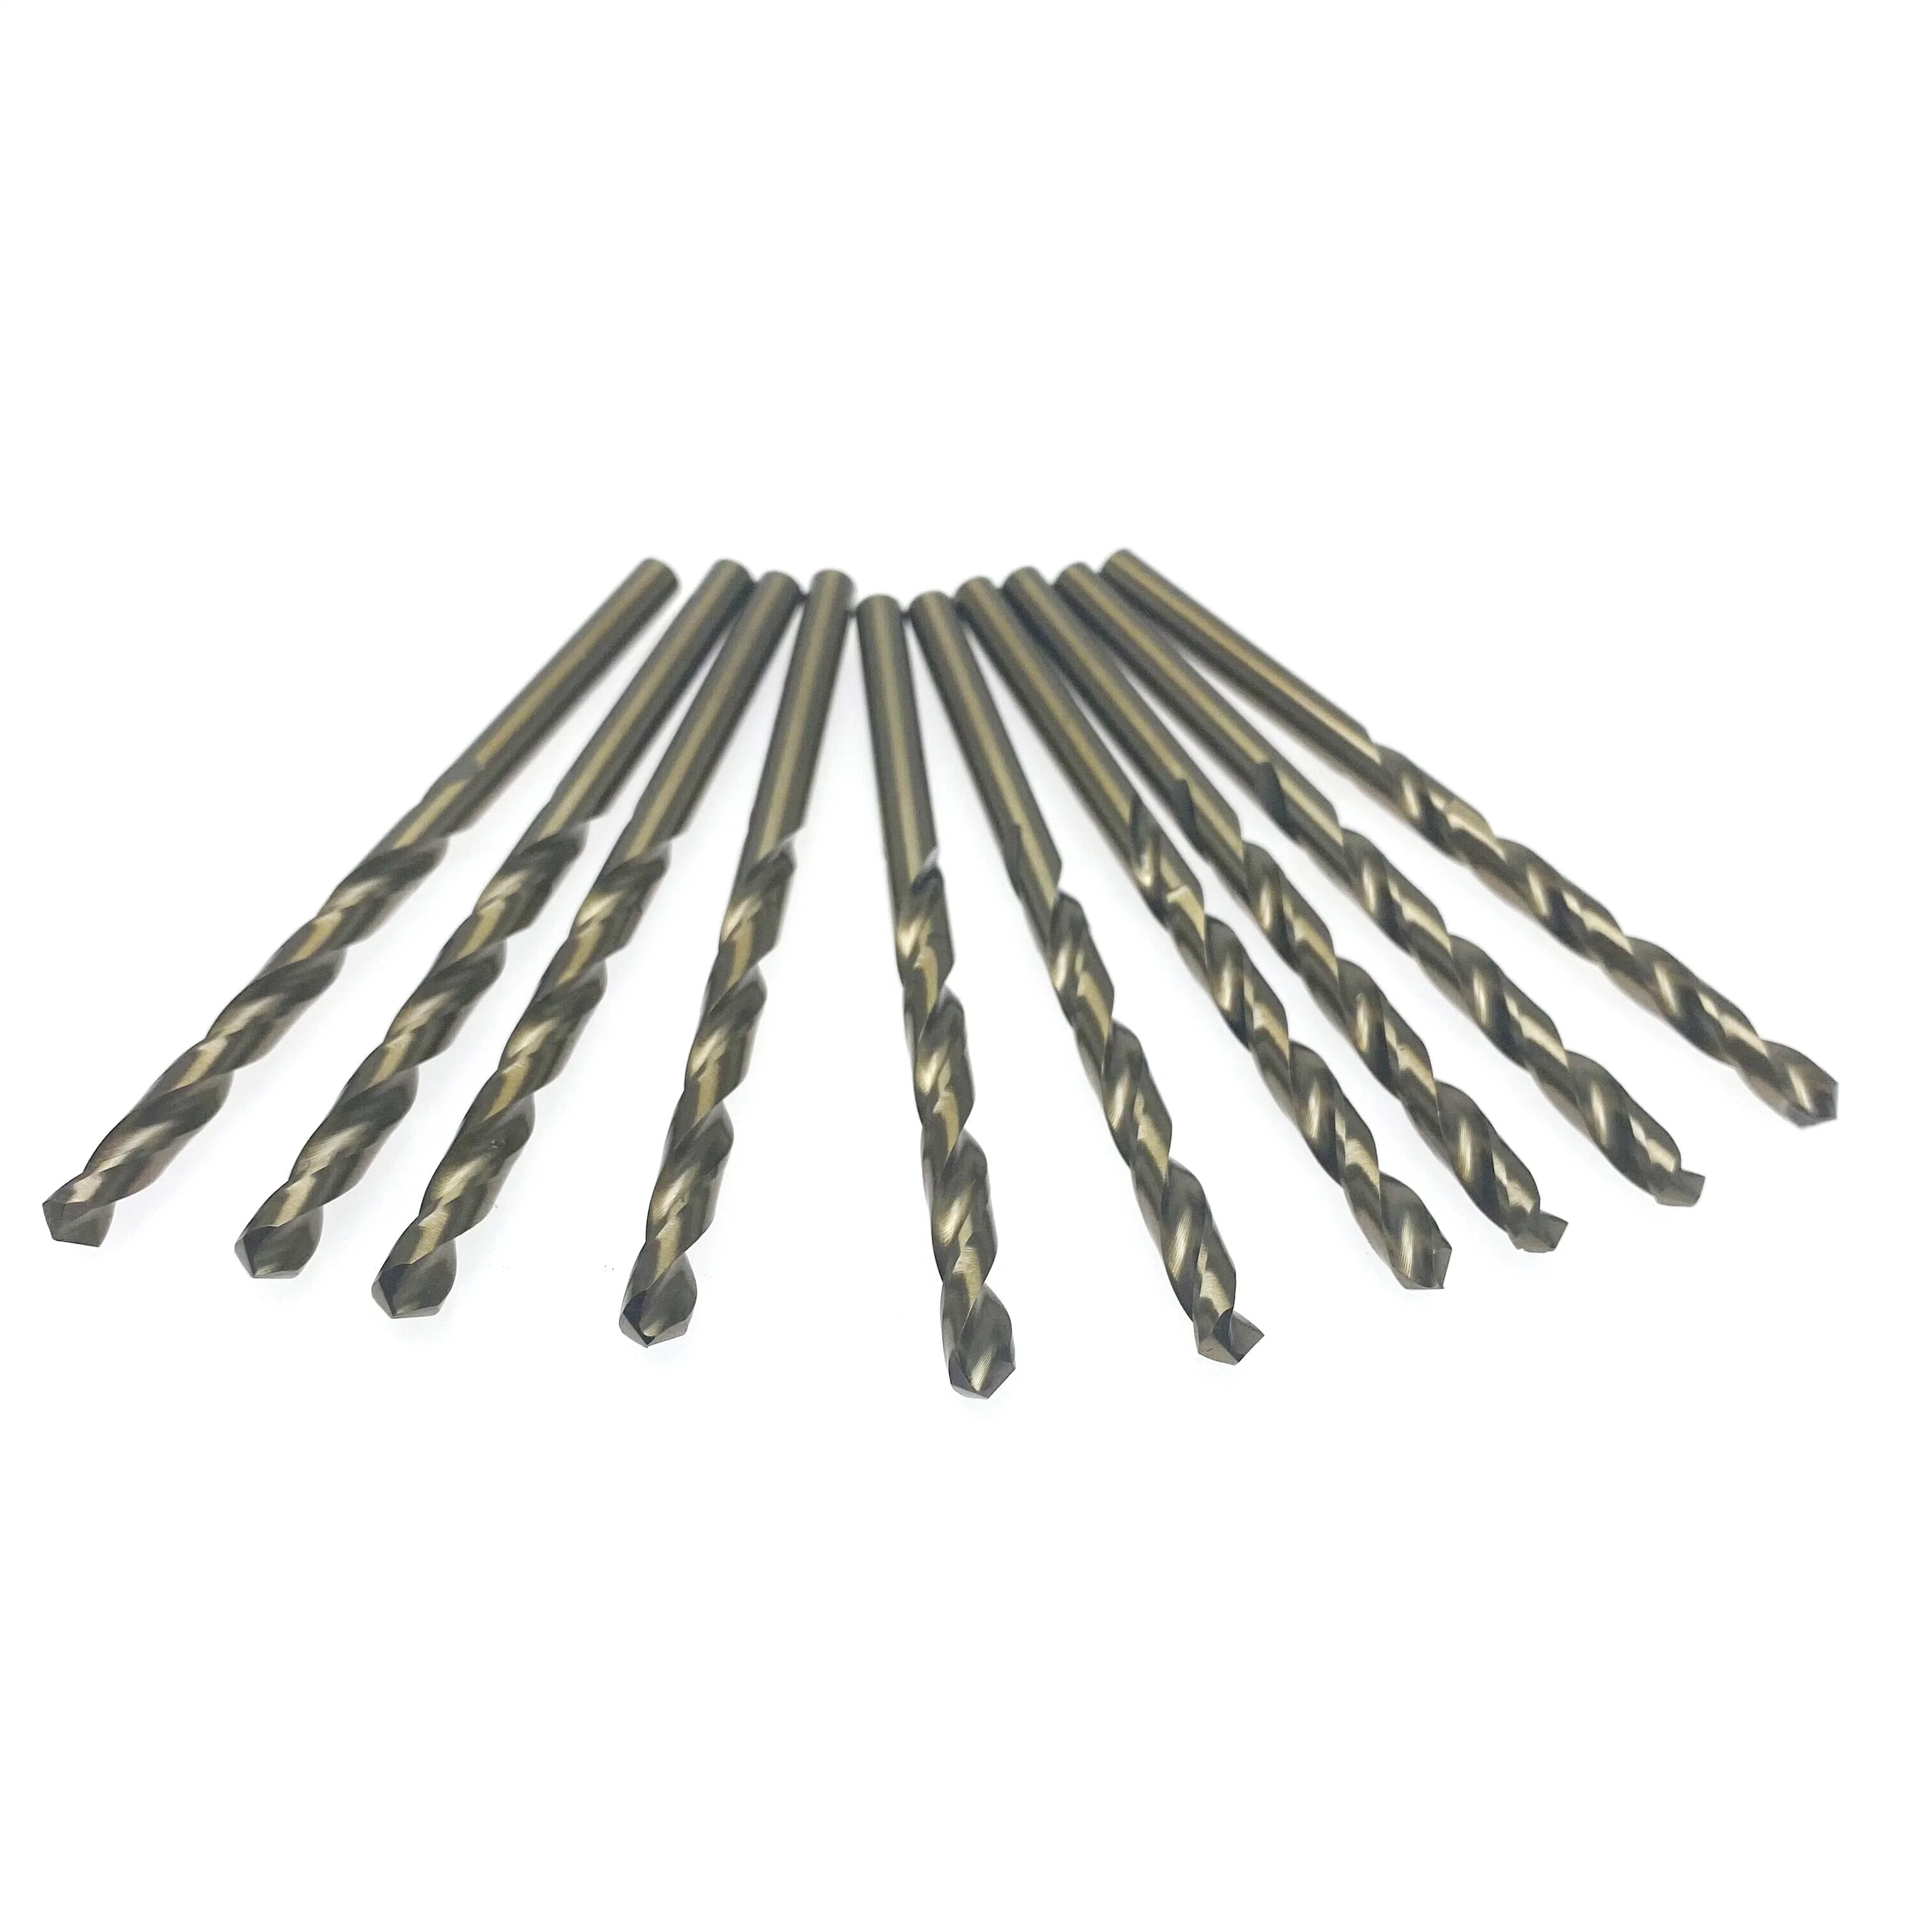 Cobalt Drill Bit Set M35 HSS Metal Twist Drill Bits for Steel Stainless Steel Hard Metal Cast Iron Plastic